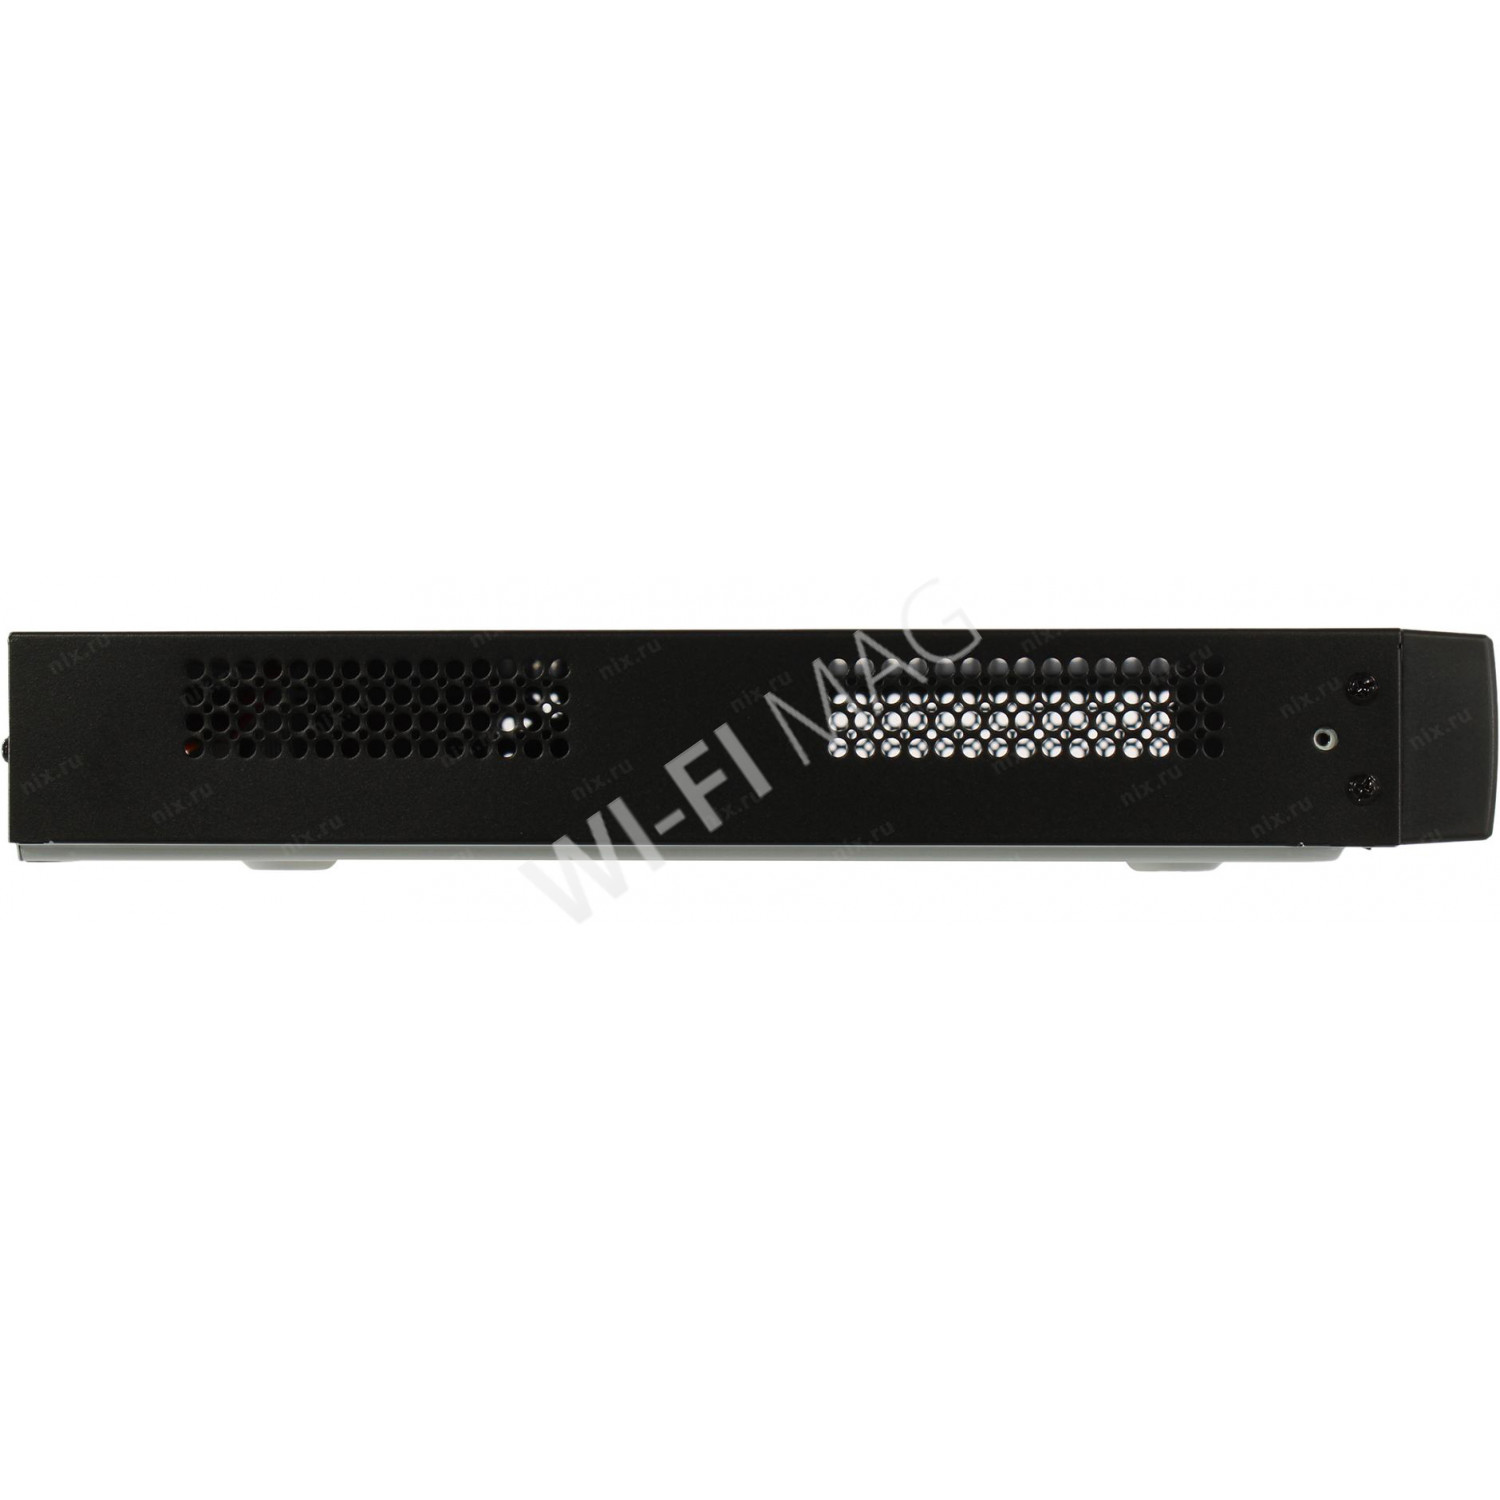 HiWatch DS-N316/2(D), 16-канальный IP-видеорегистратор